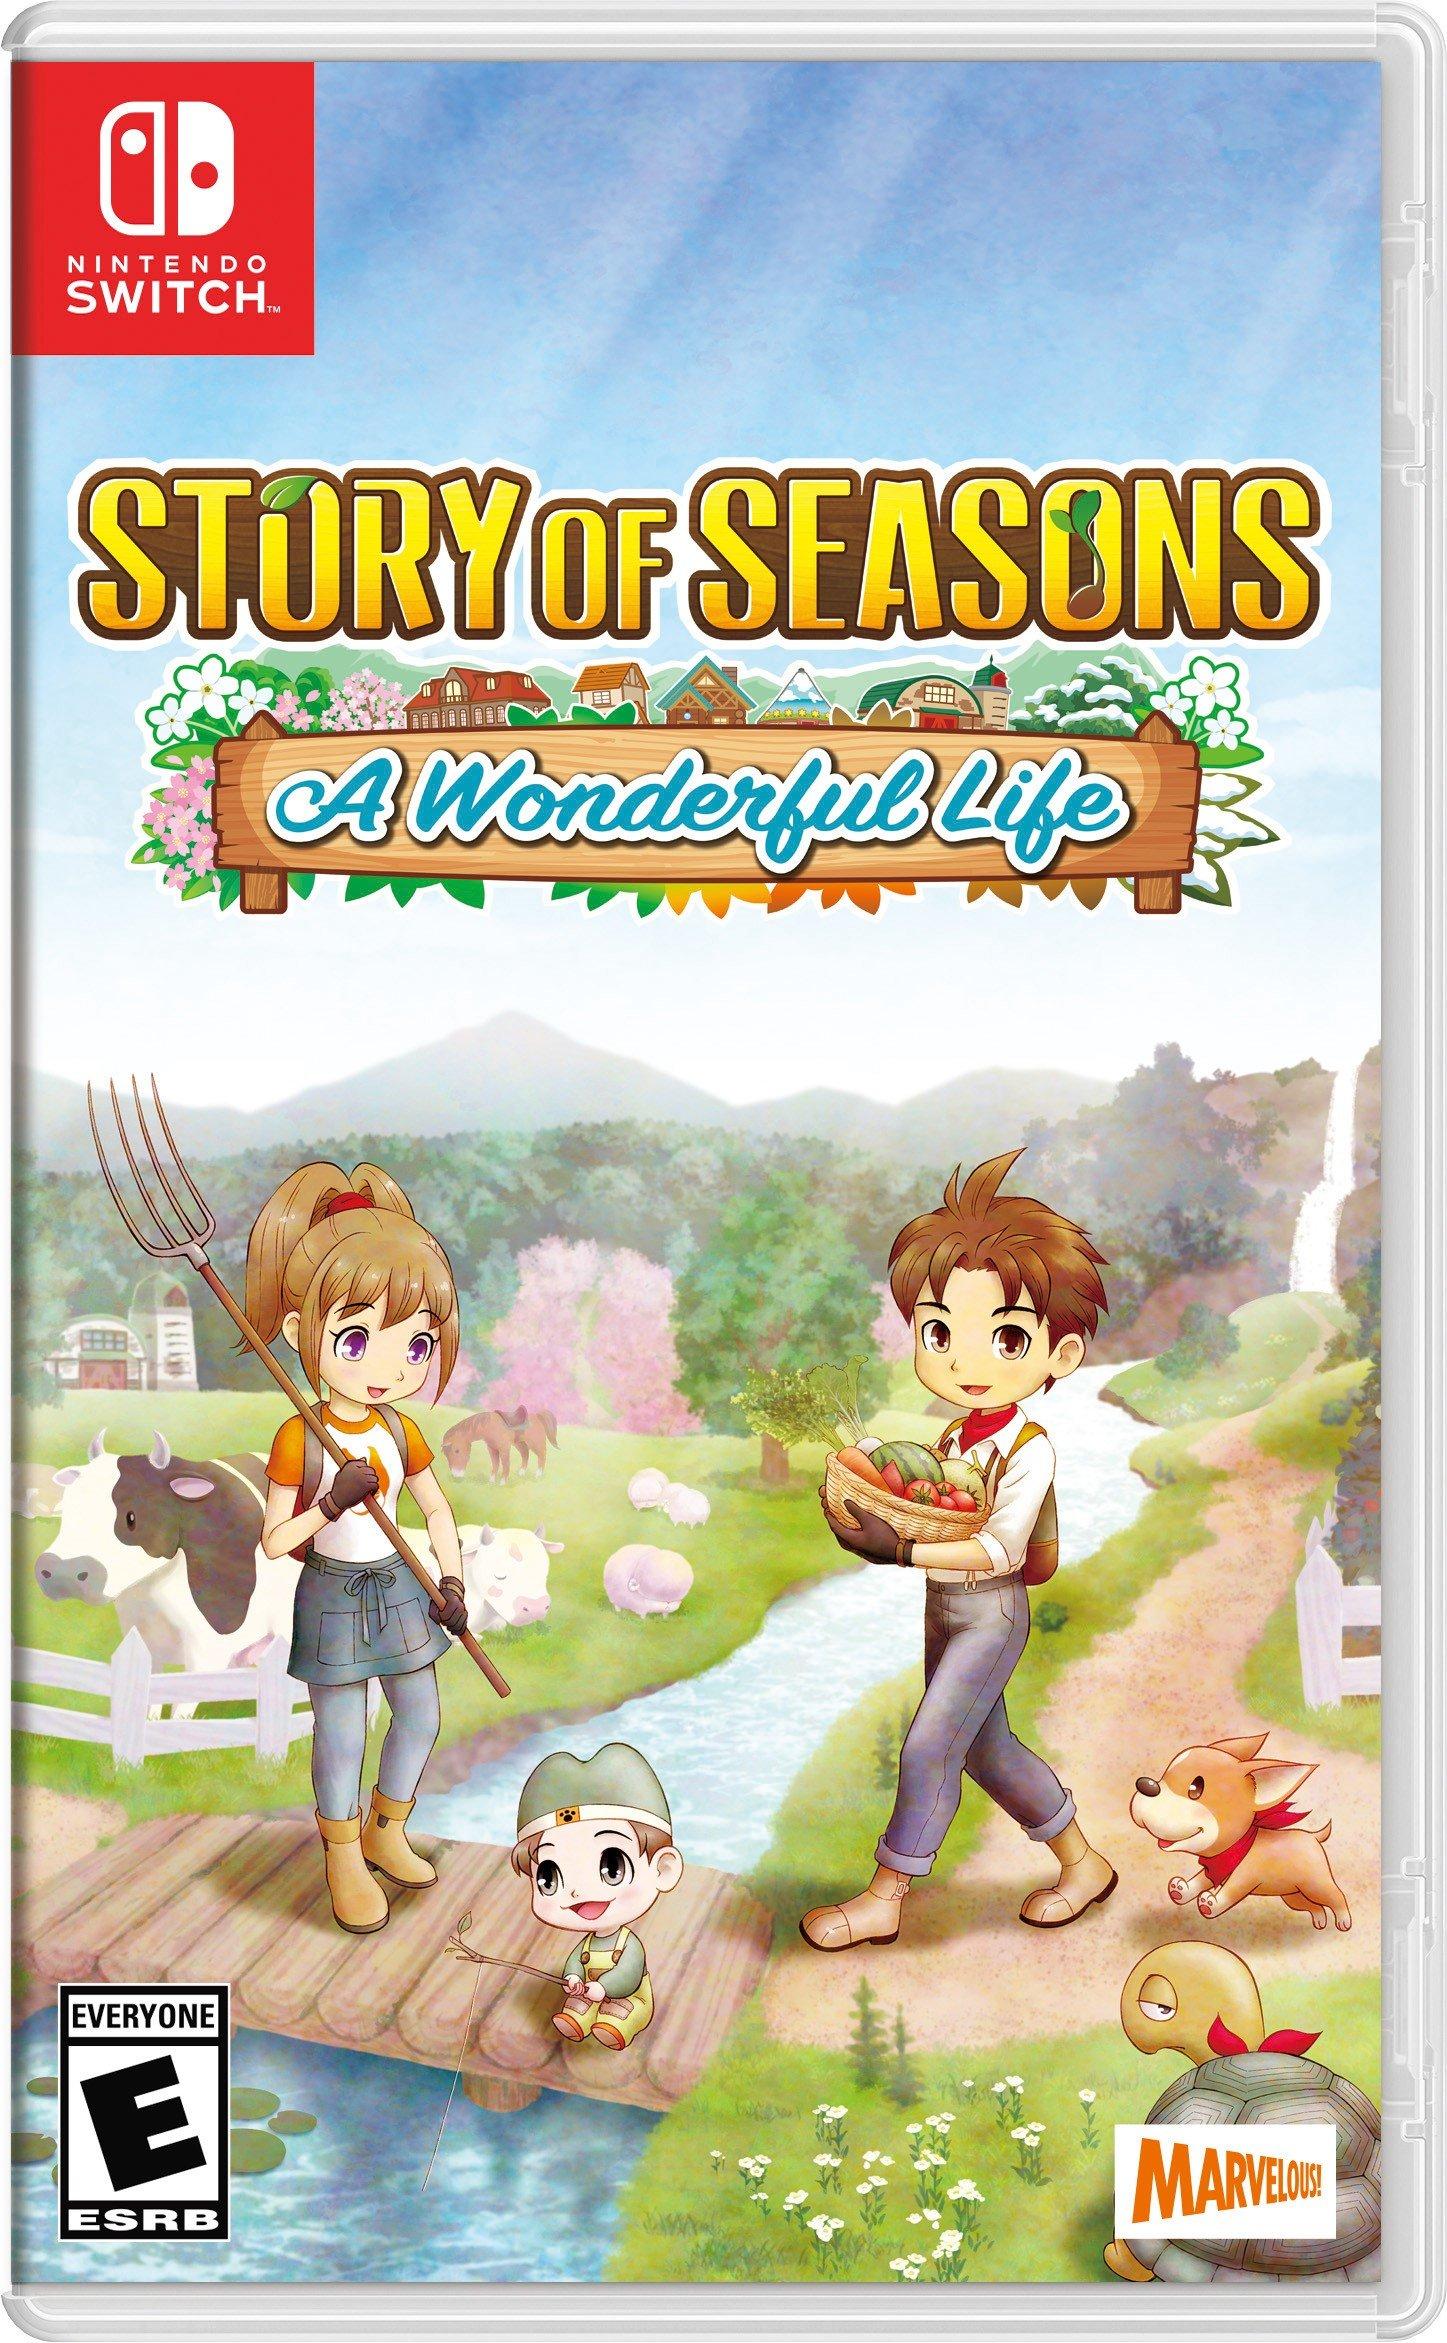 Story of Seasons: A Wonderful Life - Nintendo Switch, Nintendo Switch